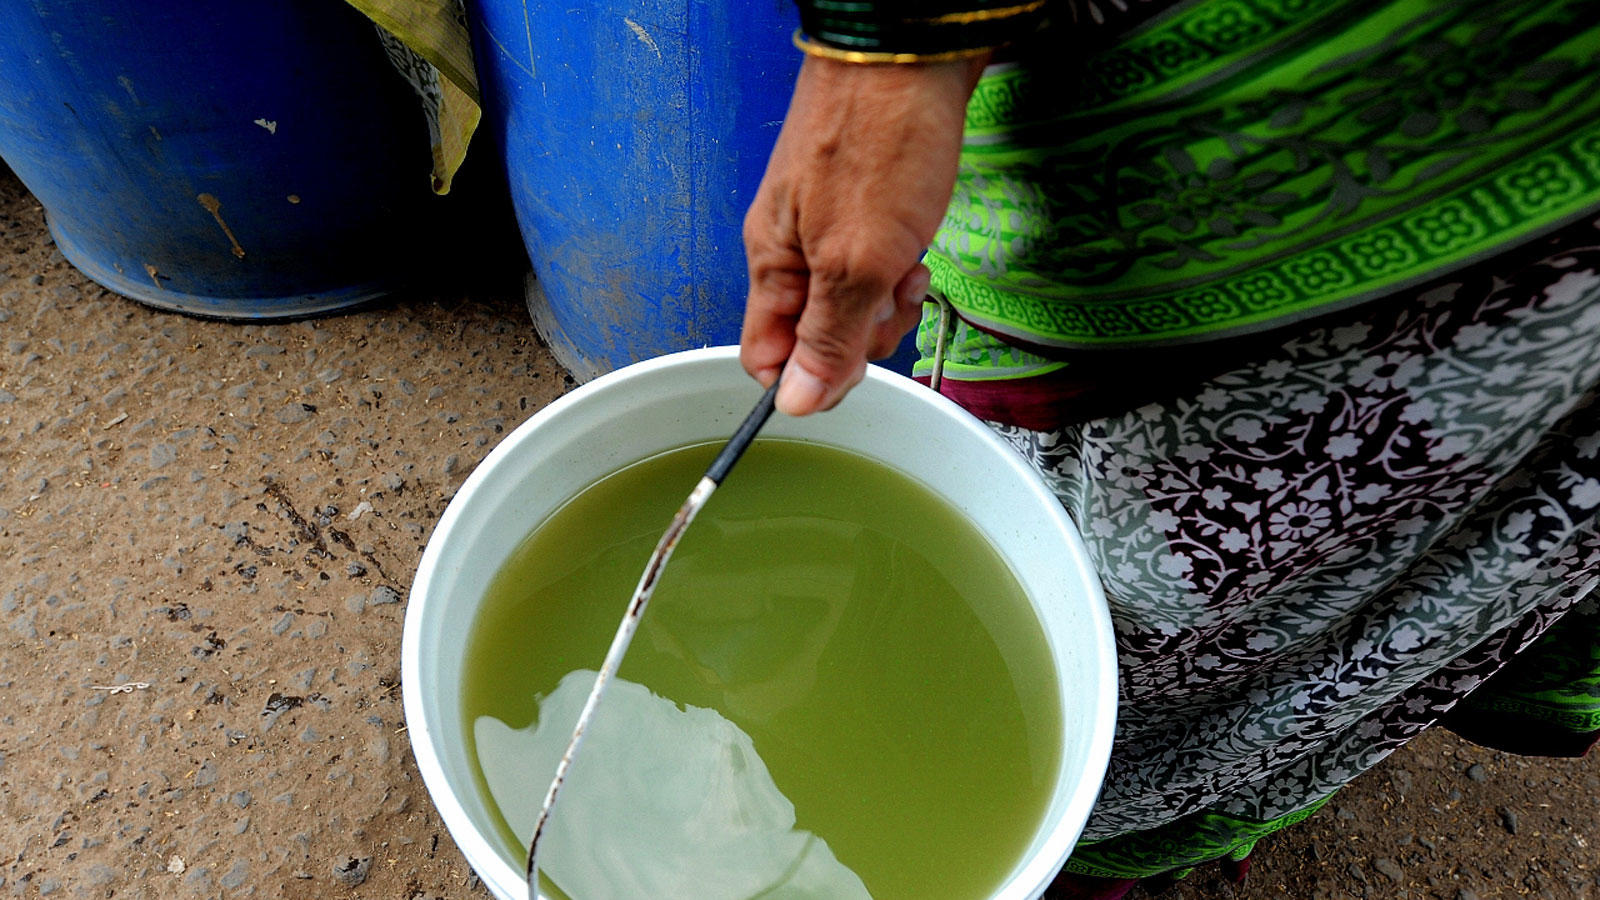 Los habitantes de Raigad, Maharashtra, solo tienen agua turbia y turbia de color marrón para satisfacer sus necesidades (Foto: KK Choudhary)